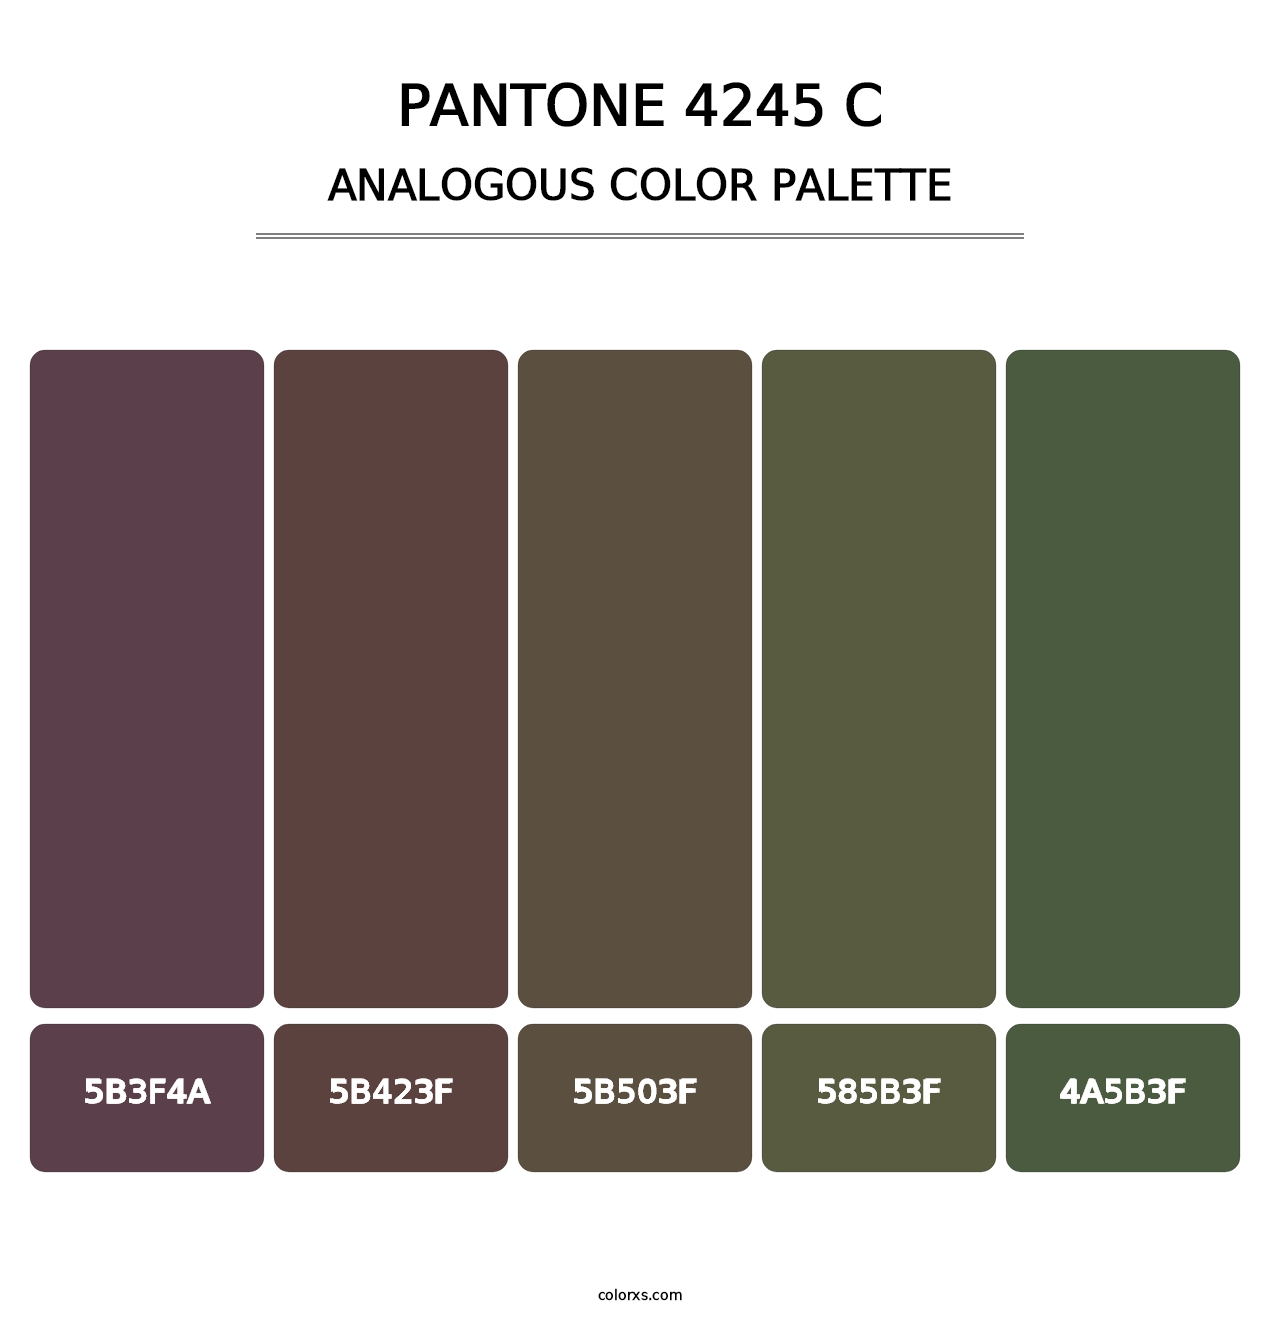 PANTONE 4245 C - Analogous Color Palette